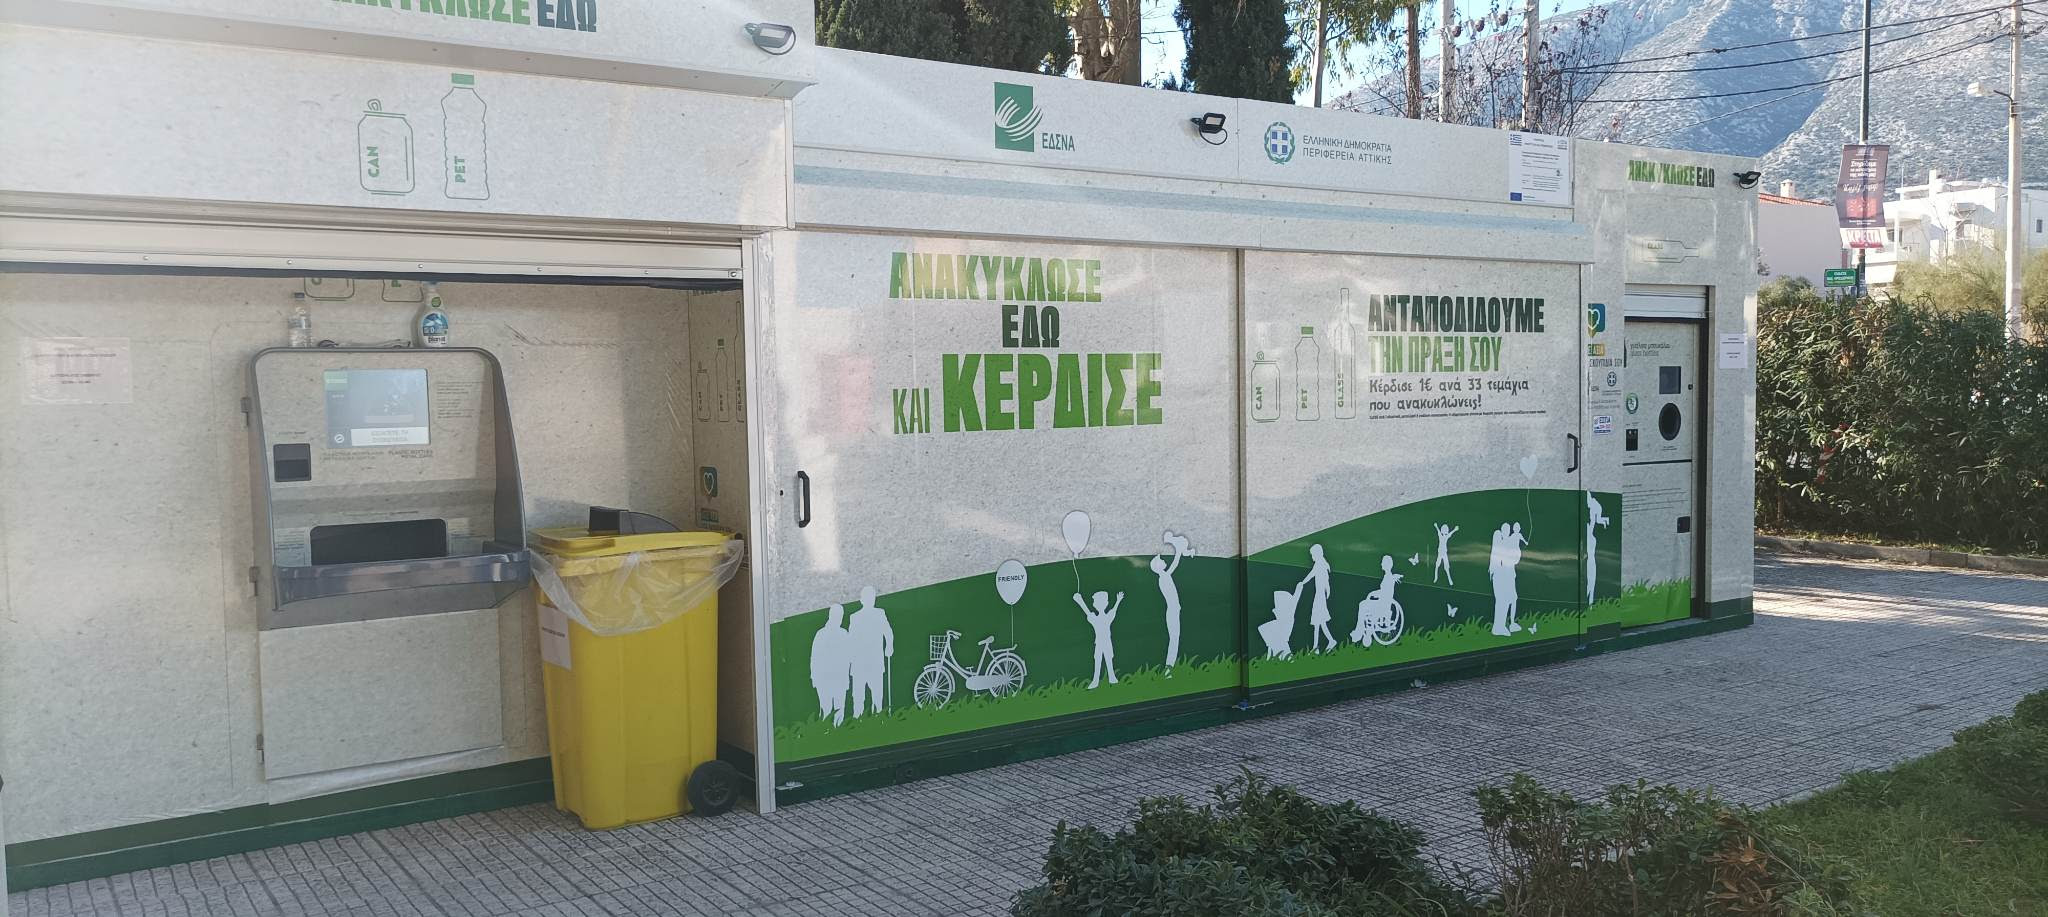 Δήμος Παιανίας: Ετοιμη η πρώτη Γωνιά Ανακύκλωσης - Ισ. Μάδης: Κοινωνικό, περιβαλλοντικό αλλά και ατομικό όφελος για τους πολίτες